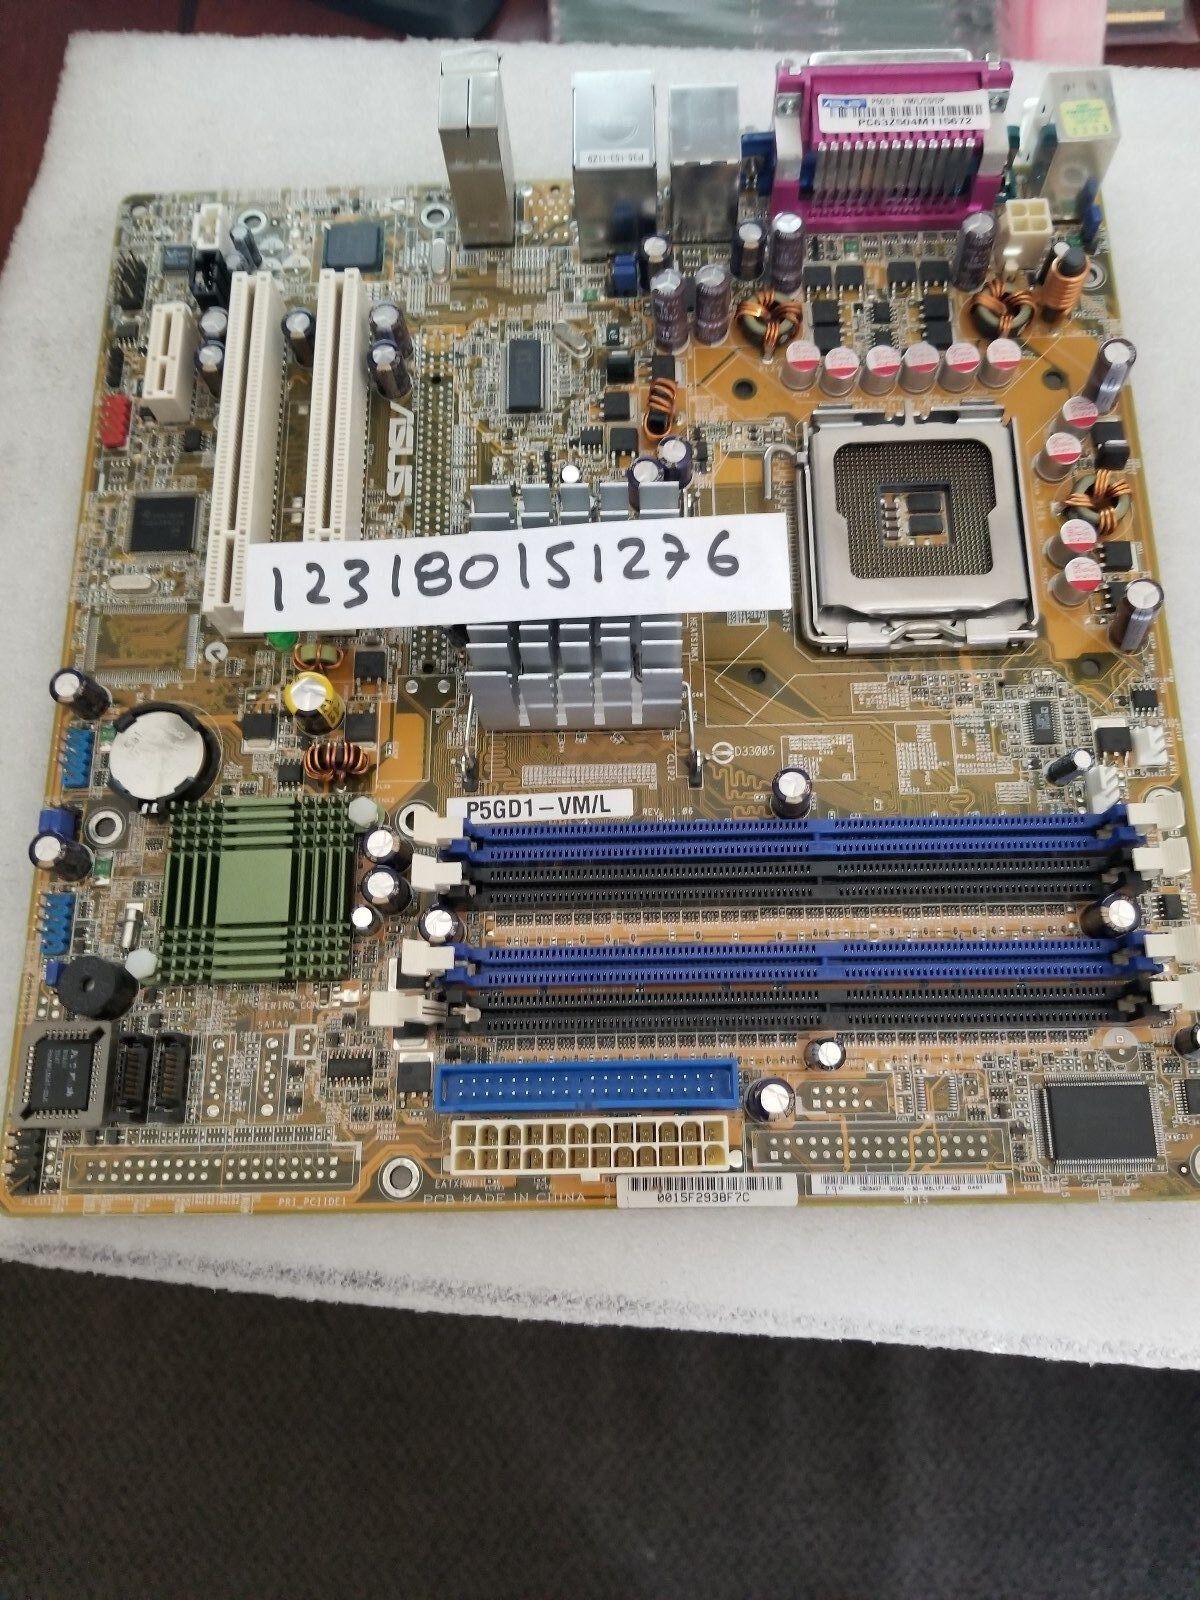 ASUS P5GD1-VM - motherboard - micro ATX - LGA775 Socket - i915G